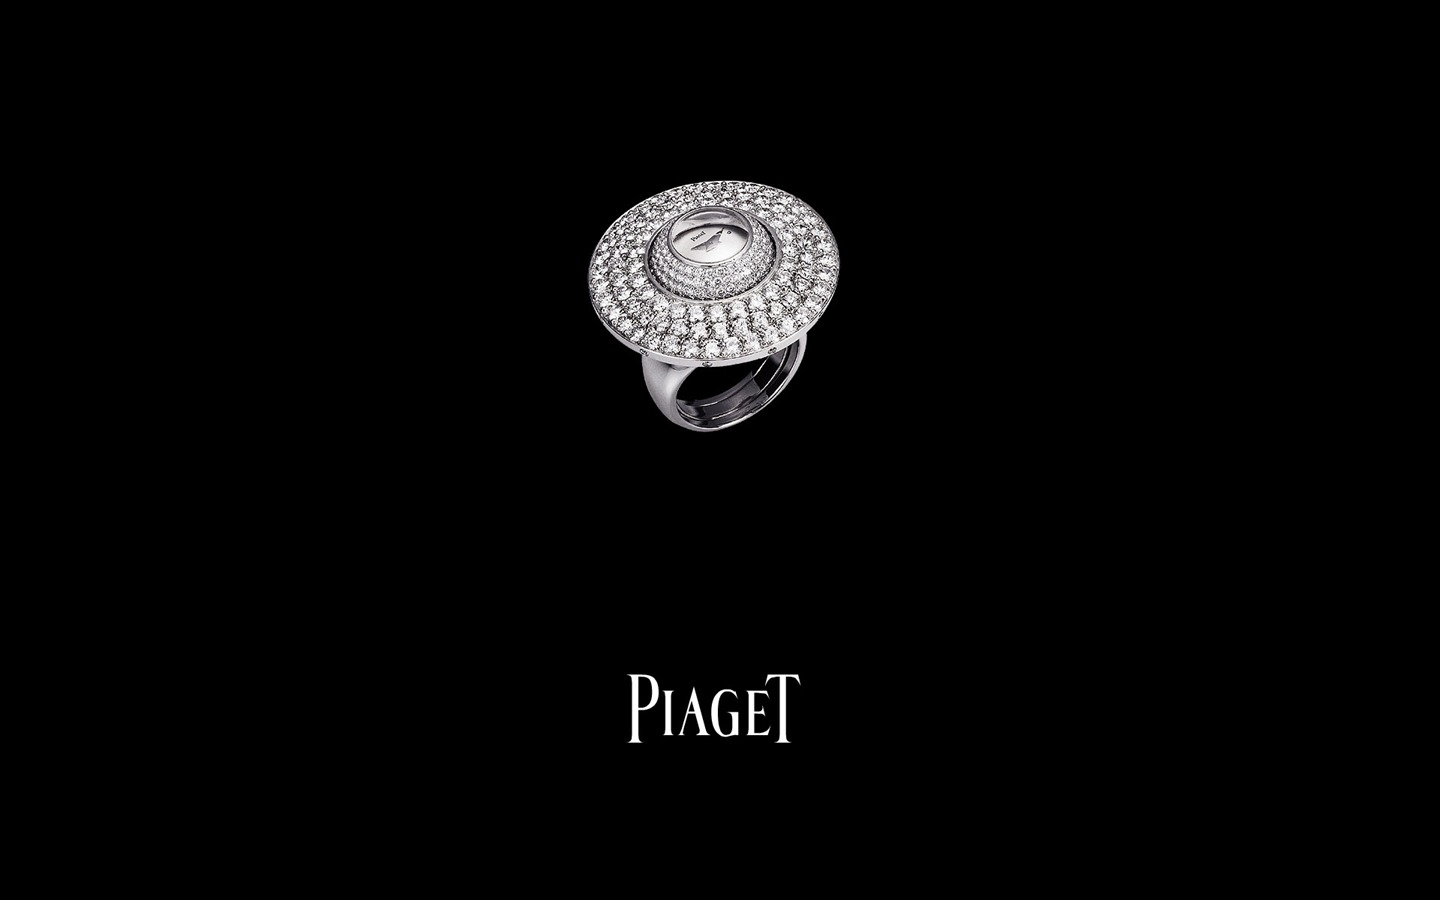 피아제 다이아몬드 시계 벽지 (1) #2 - 1440x900